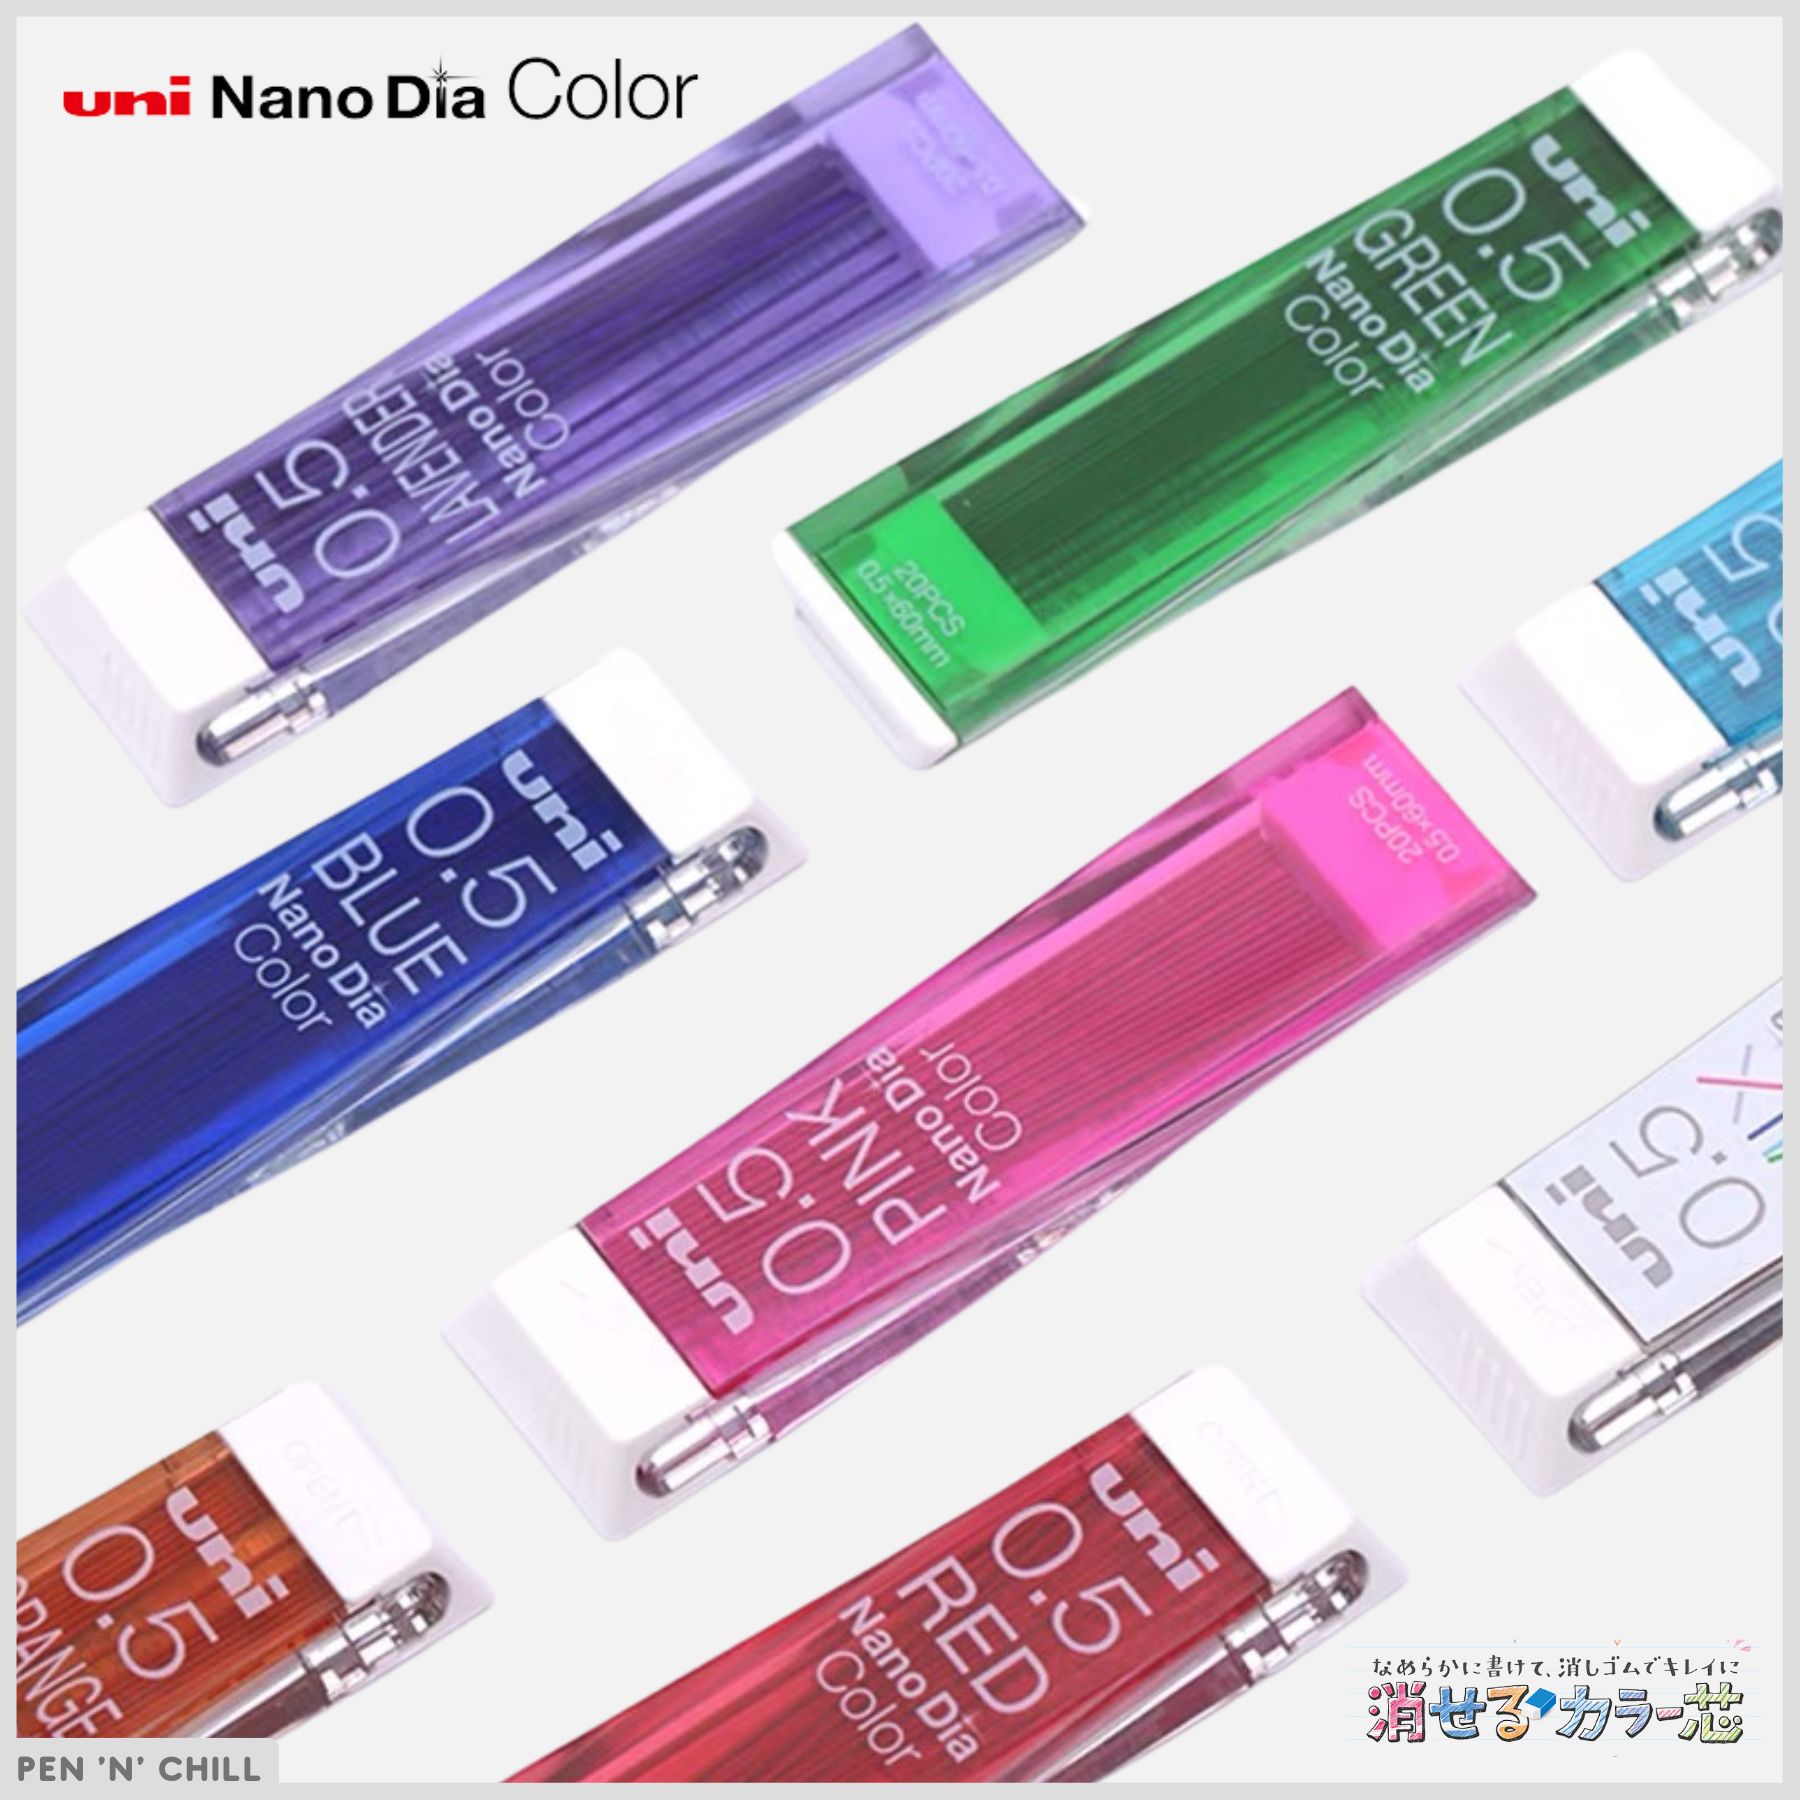 Ngòi bút chì màu Uni Nano Dia Color - Cỡ ngòi 0.5mm